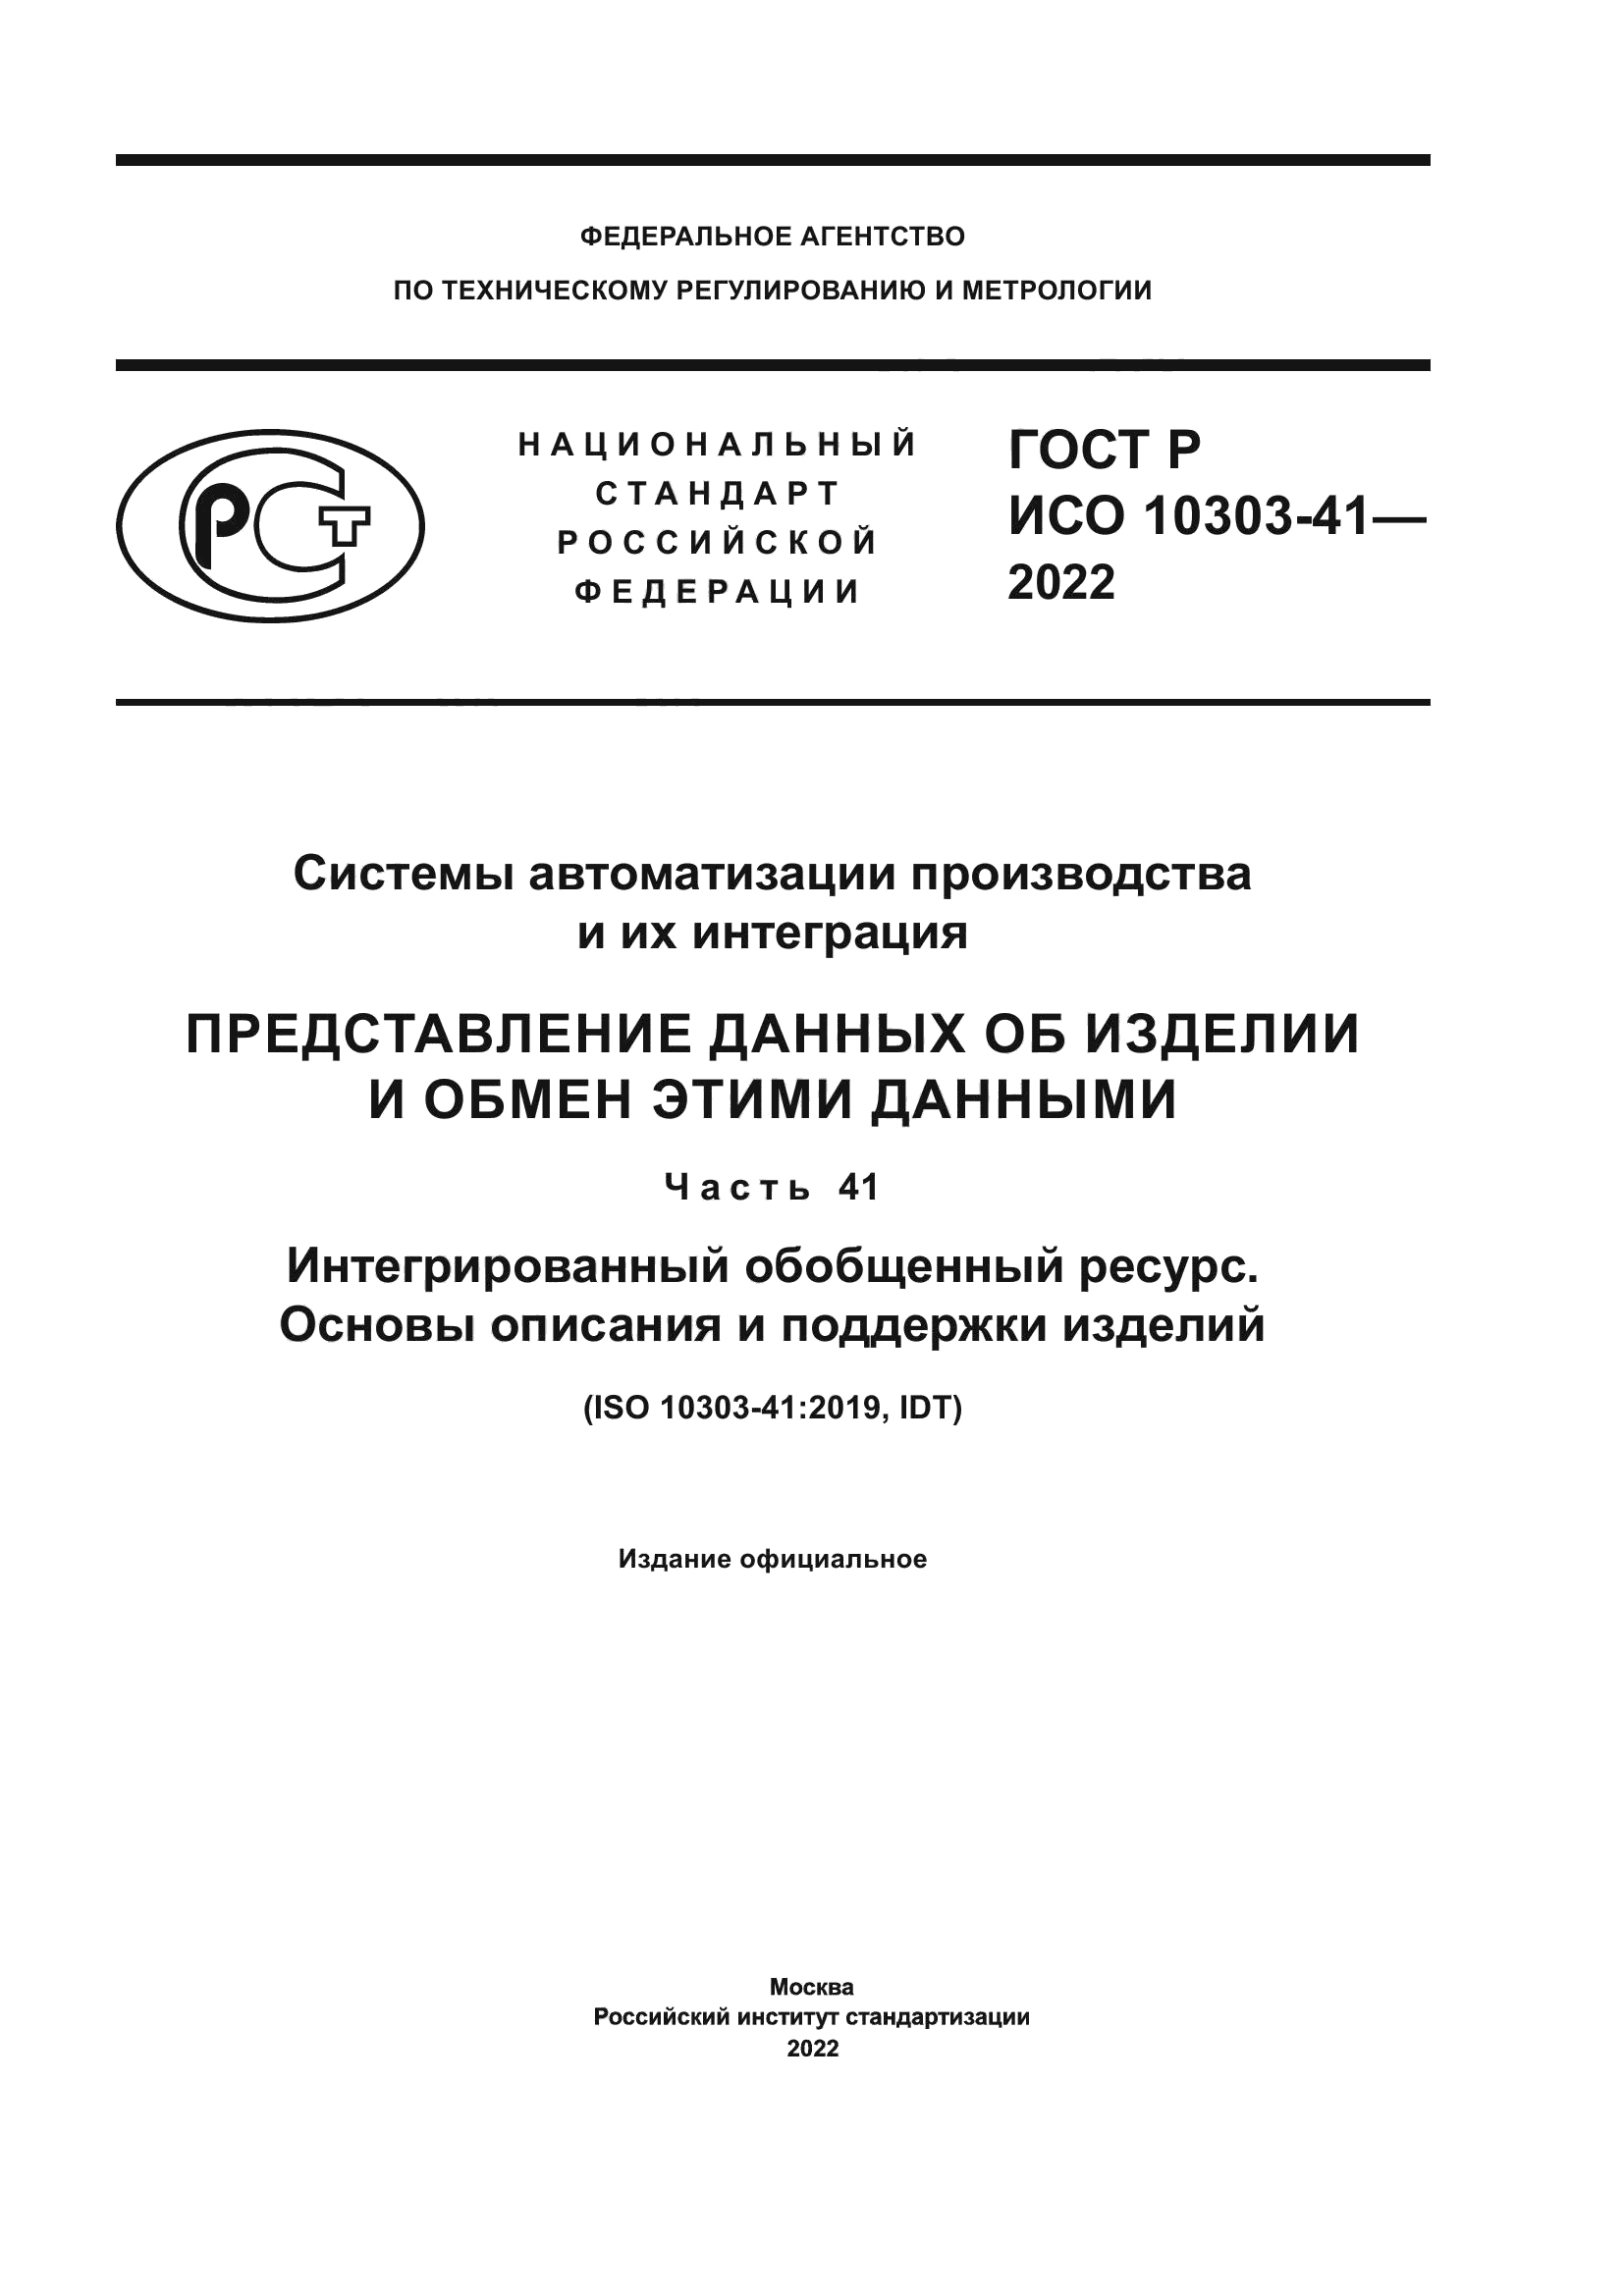 ГОСТ Р ИСО 10303-41-2022